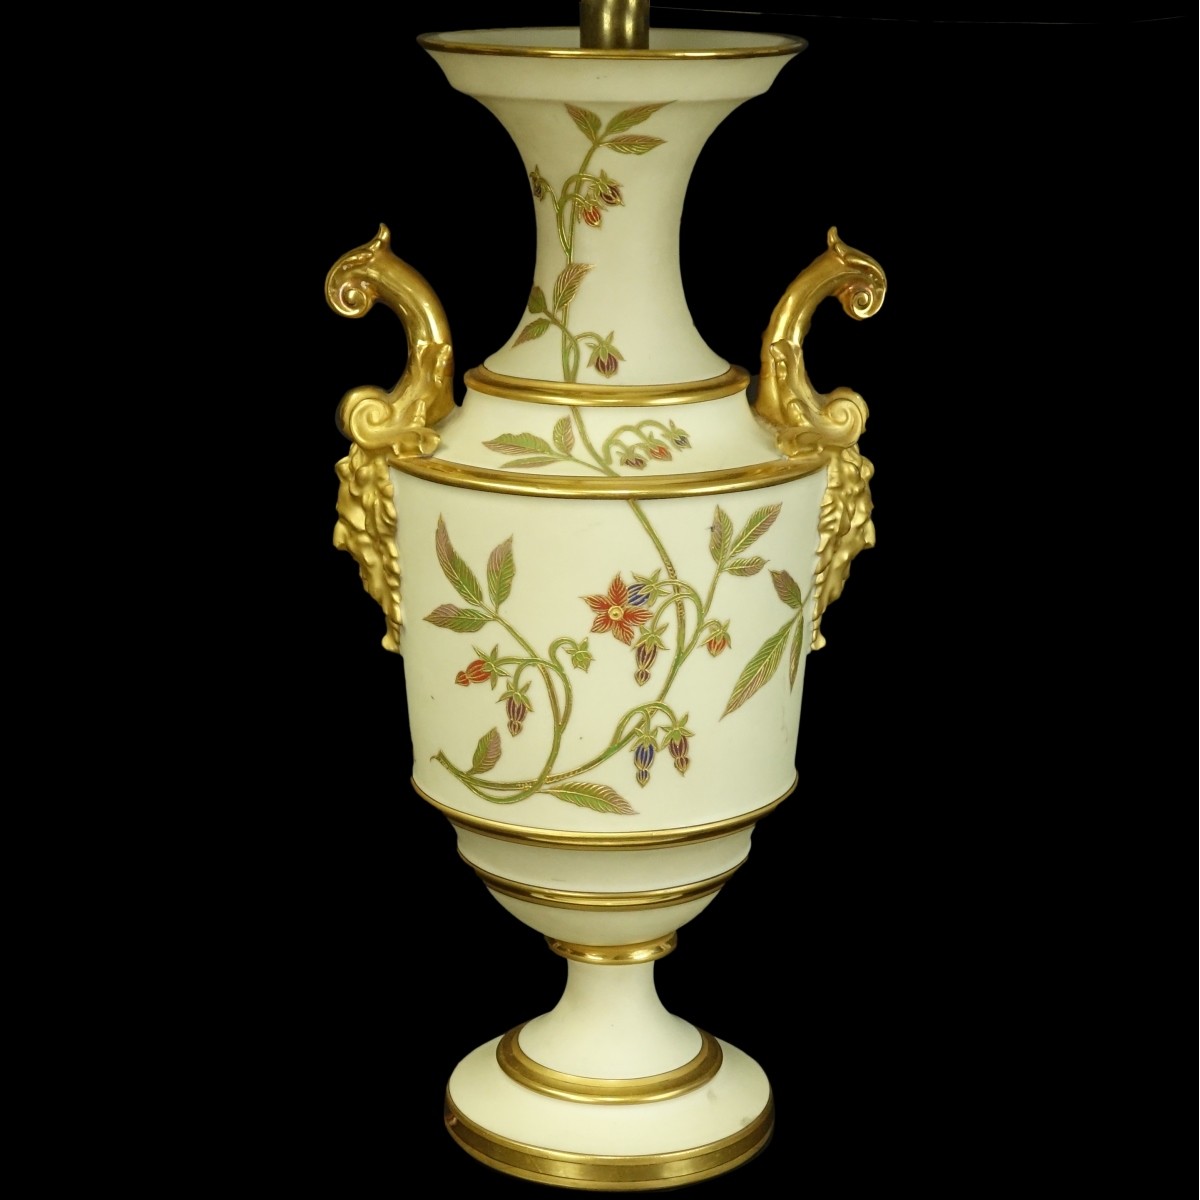 Royal Worcester style Porcelain Urn Lamp